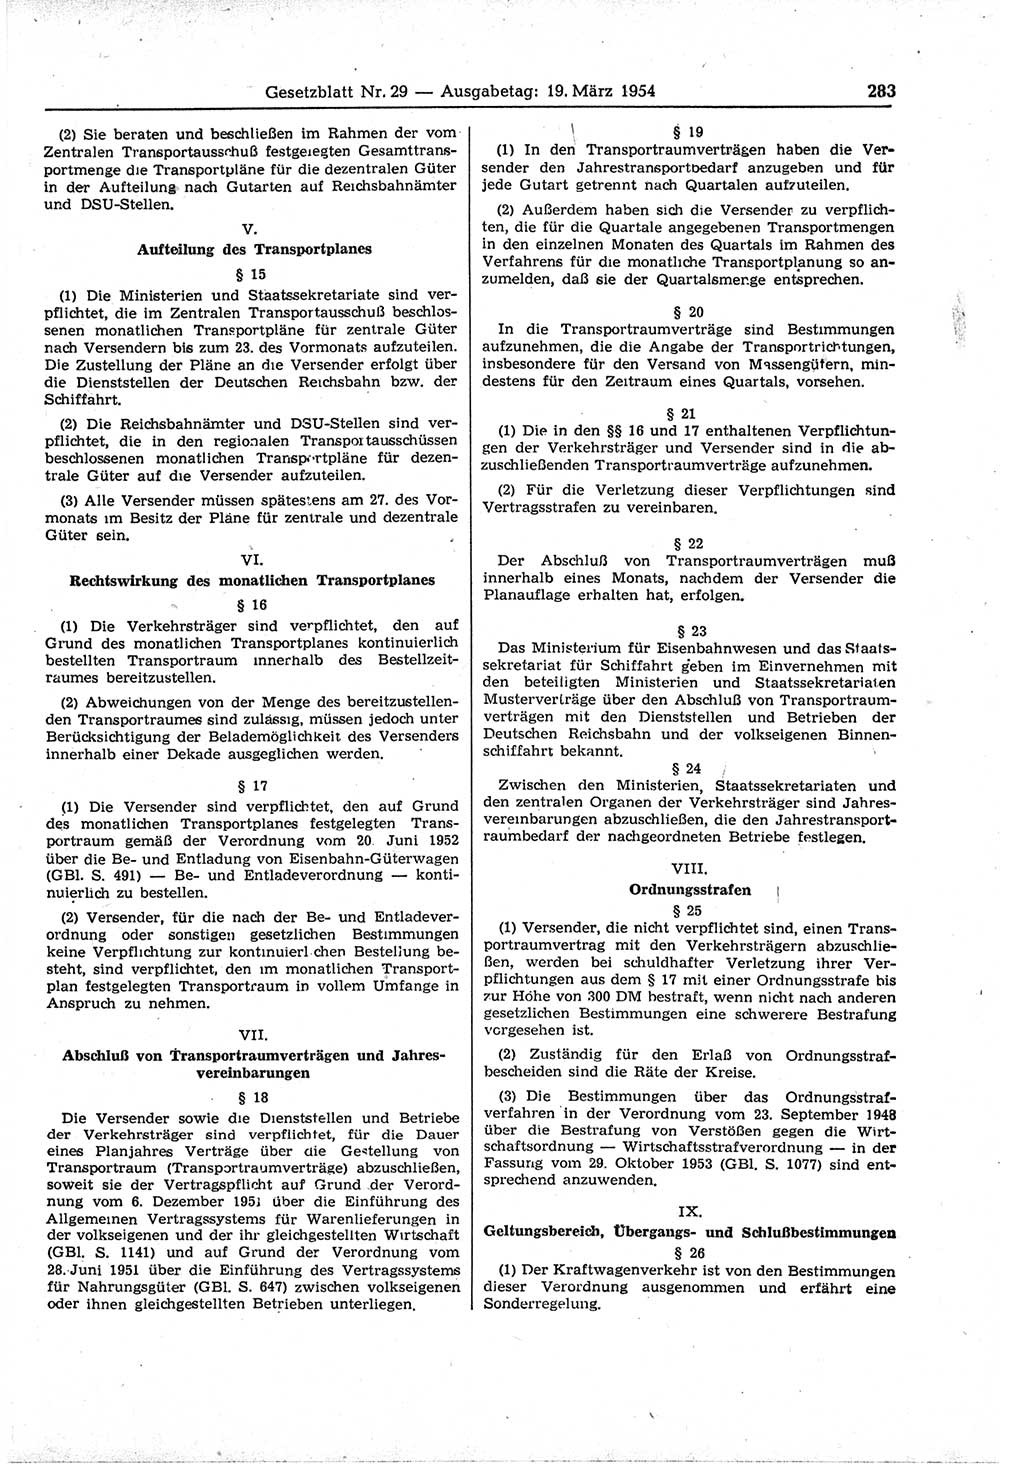 Gesetzblatt (GBl.) der Deutschen Demokratischen Republik (DDR) 1954, Seite 283 (GBl. DDR 1954, S. 283)